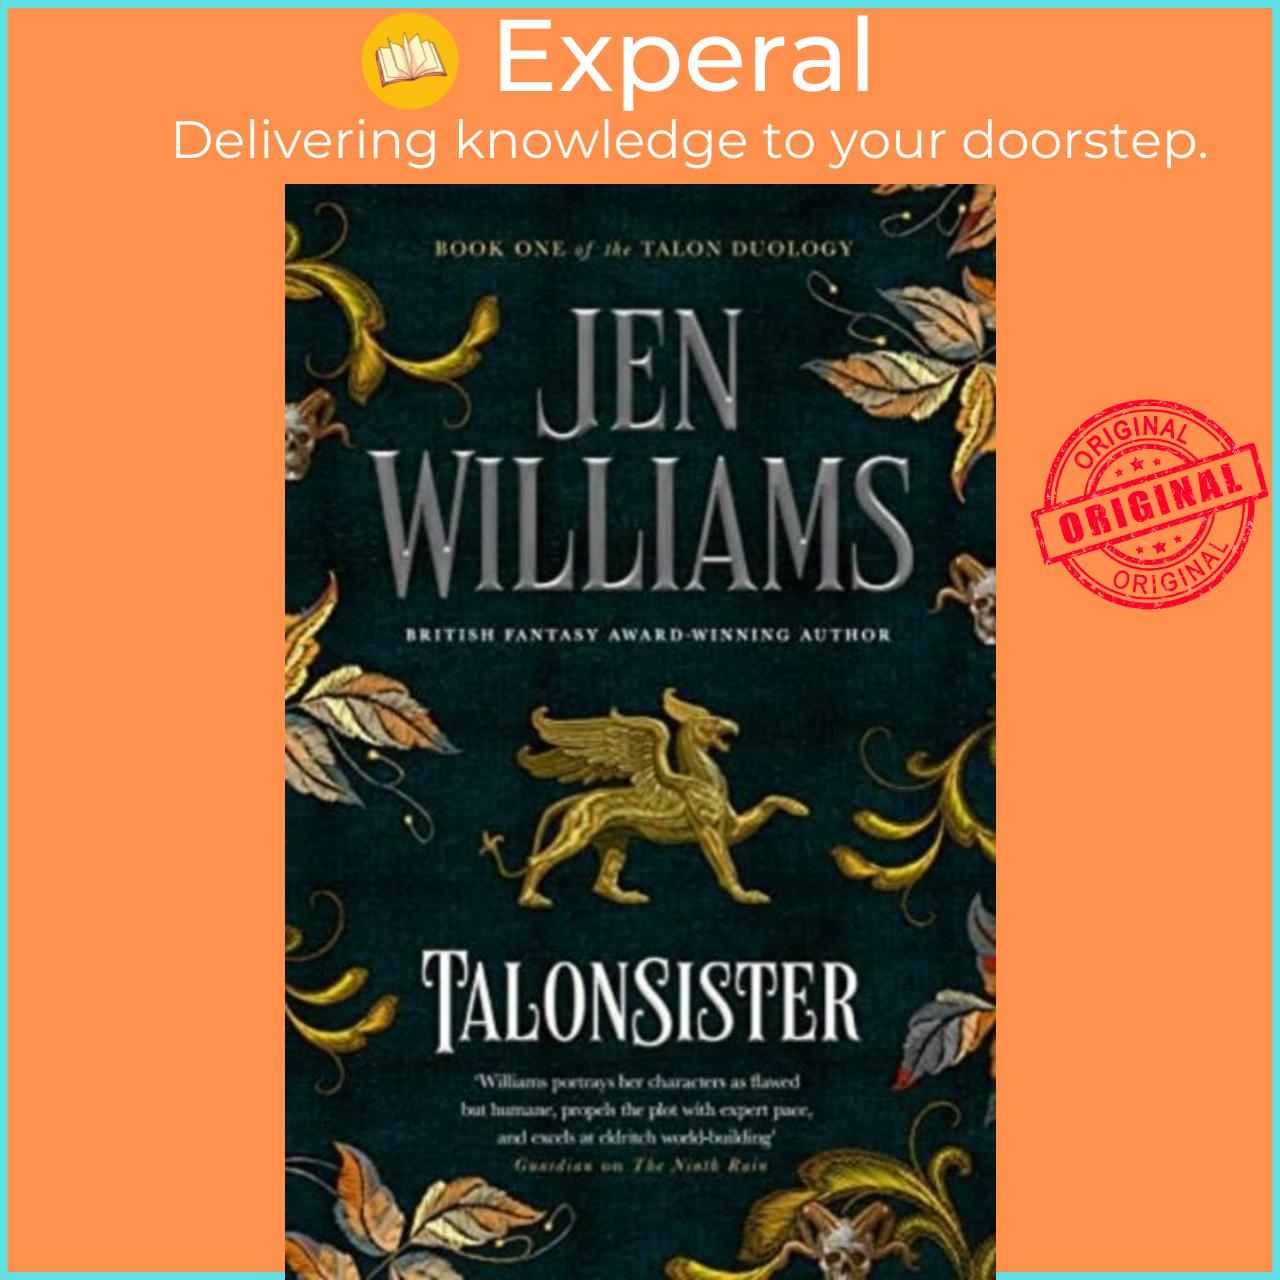 Hình ảnh Sách - Talonsister by Jen Williams (UK edition, hardcover)